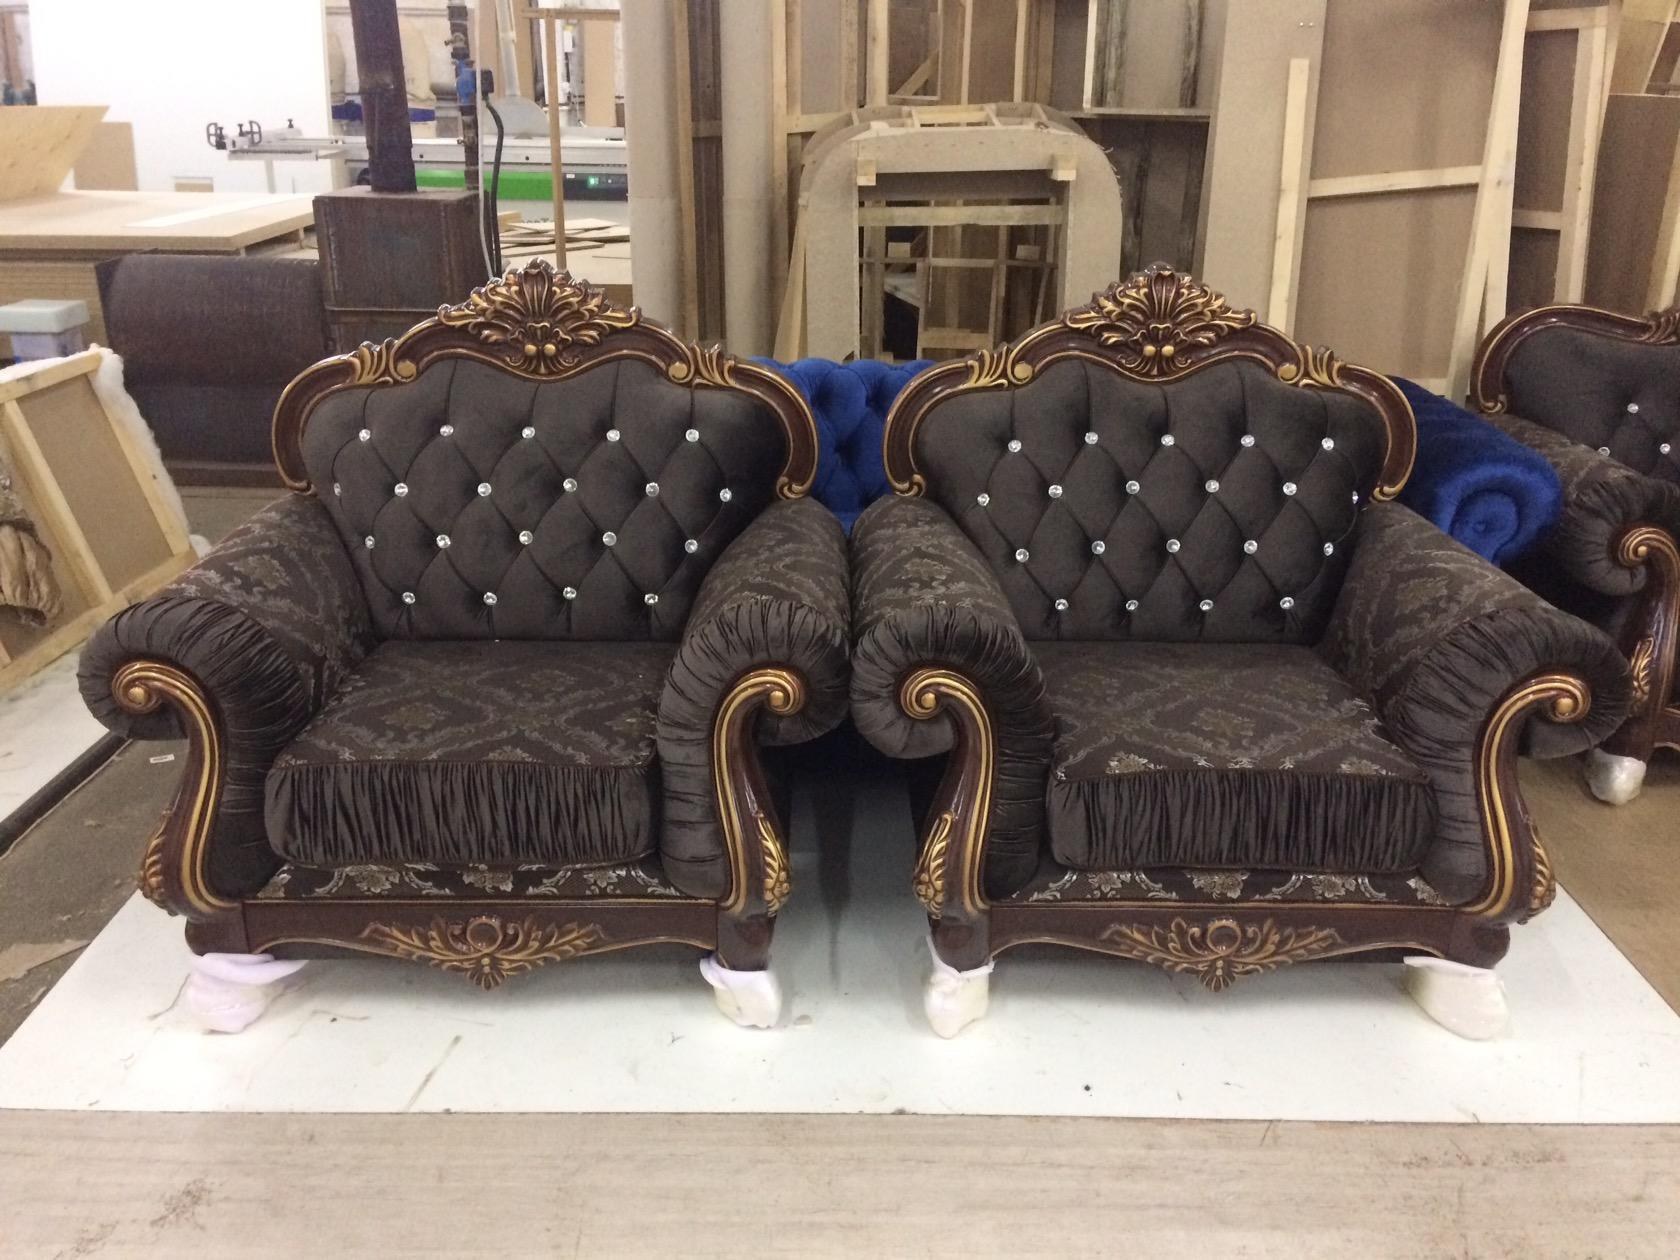 Купить мебель в пятигорске. Мебель корона 2. Барокко комплект мягкой мебели корона. Корона диван и кресла Верди мебель. Диван корона 2.